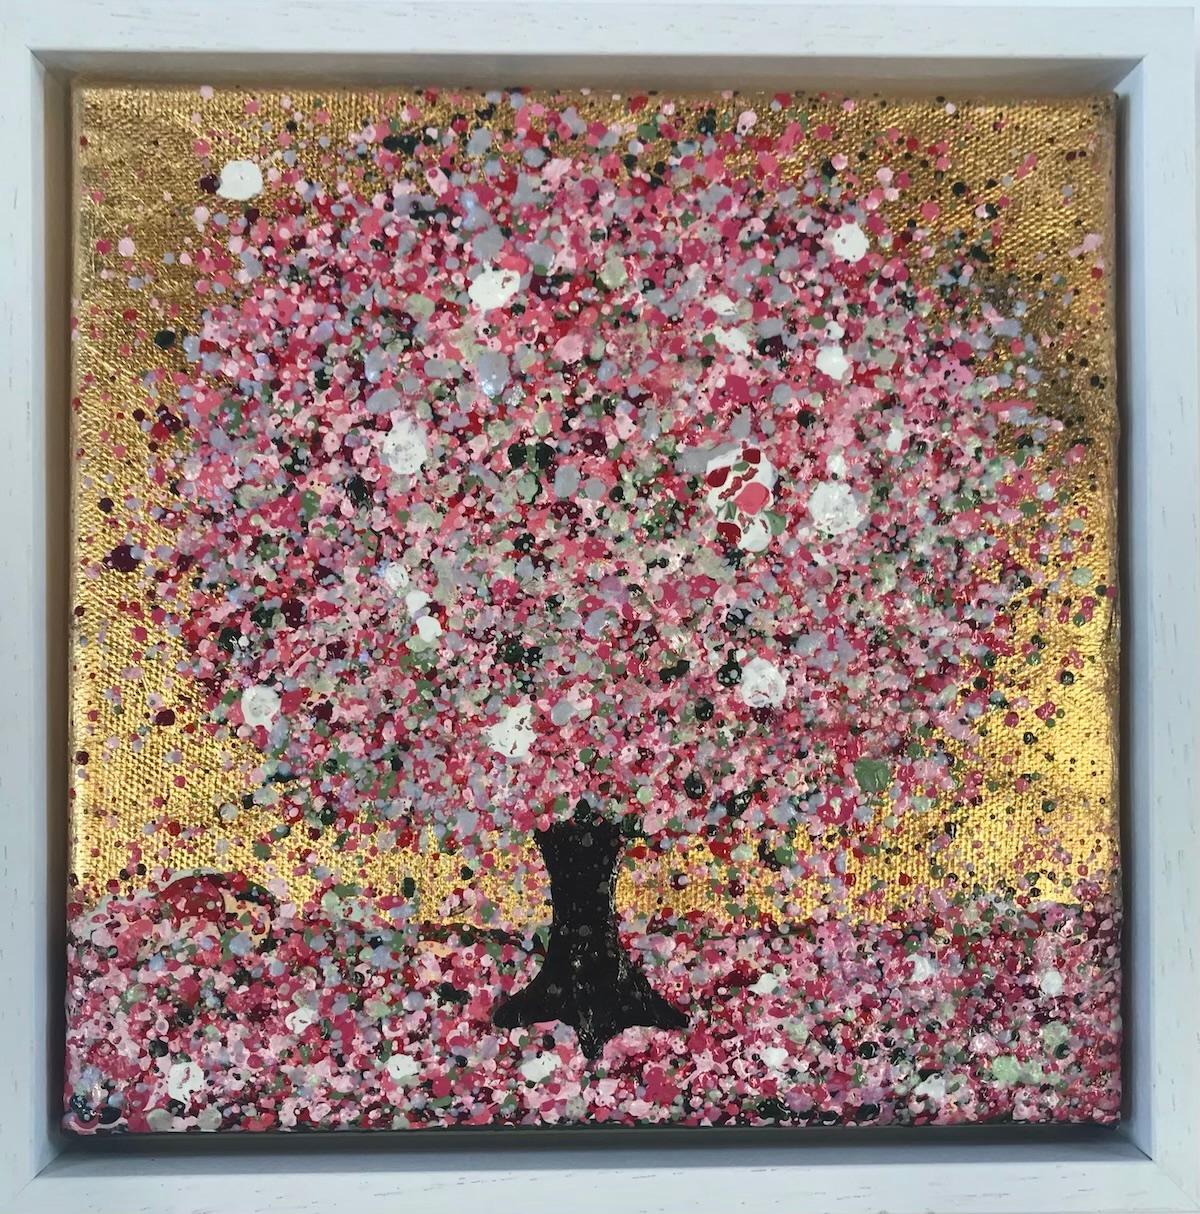 Eine kleine Frühlingsfreude von Nicky Chubb [2022]
original und handsigniert vom Künstler 
Acryl auf Leinwand
Bildgröße: H:20 cm x B:20 cm
Gesamtgröße des ungerahmten Werks: H:20 cm x B:20 cm x T:2,5cm
Rahmengröße: H:23 cm x B:23 cm x